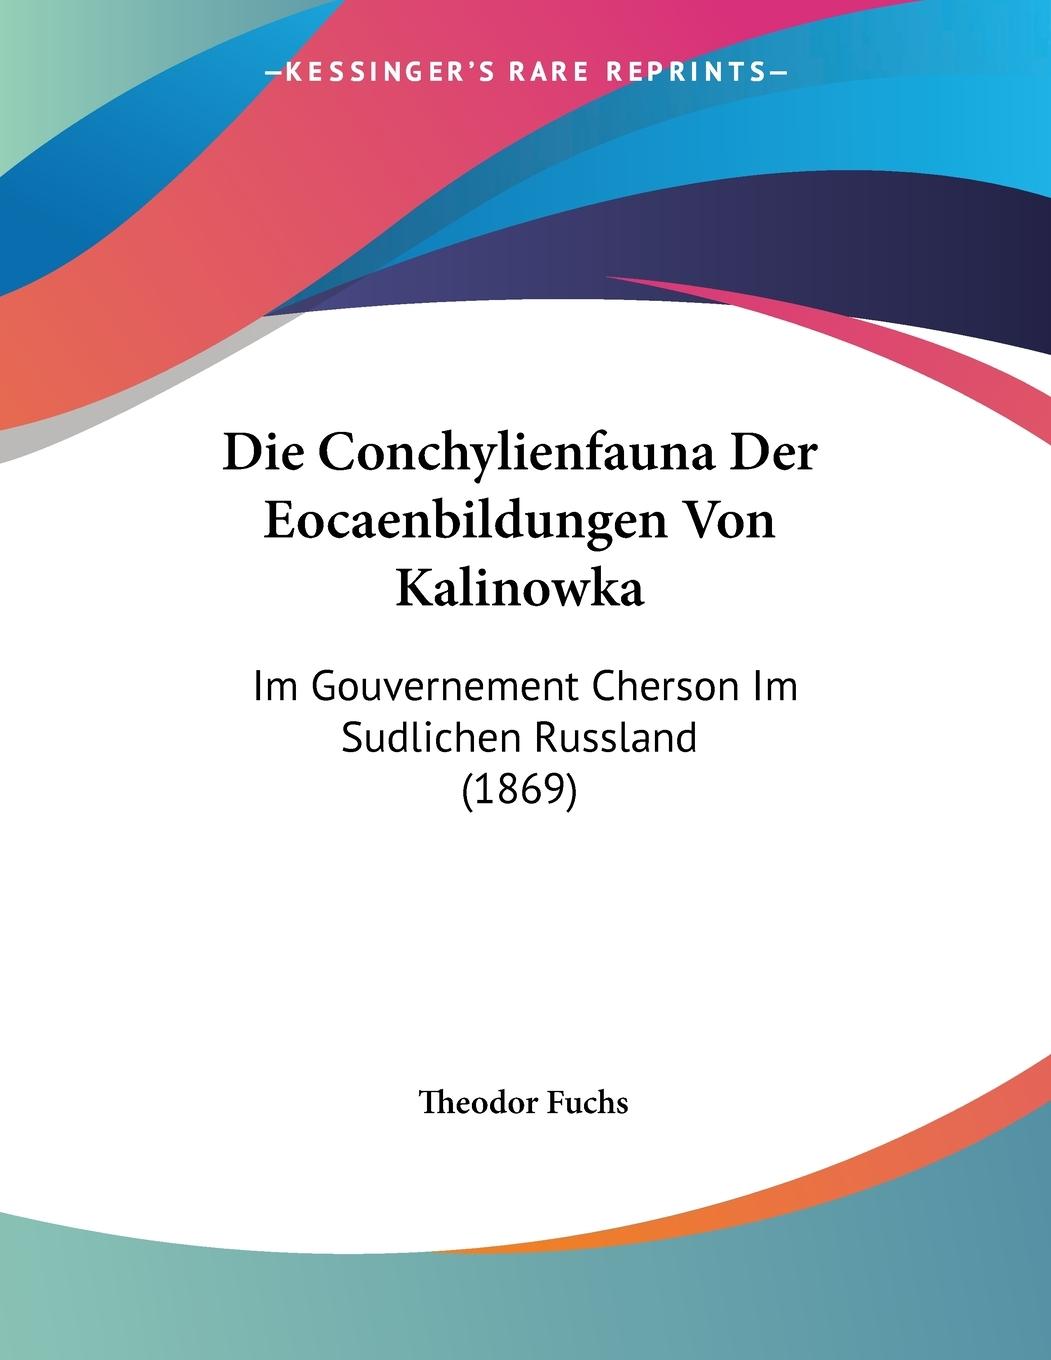 Die Conchylienfauna Der Eocaenbildungen Von Kalinowka - Fuchs, Theodor